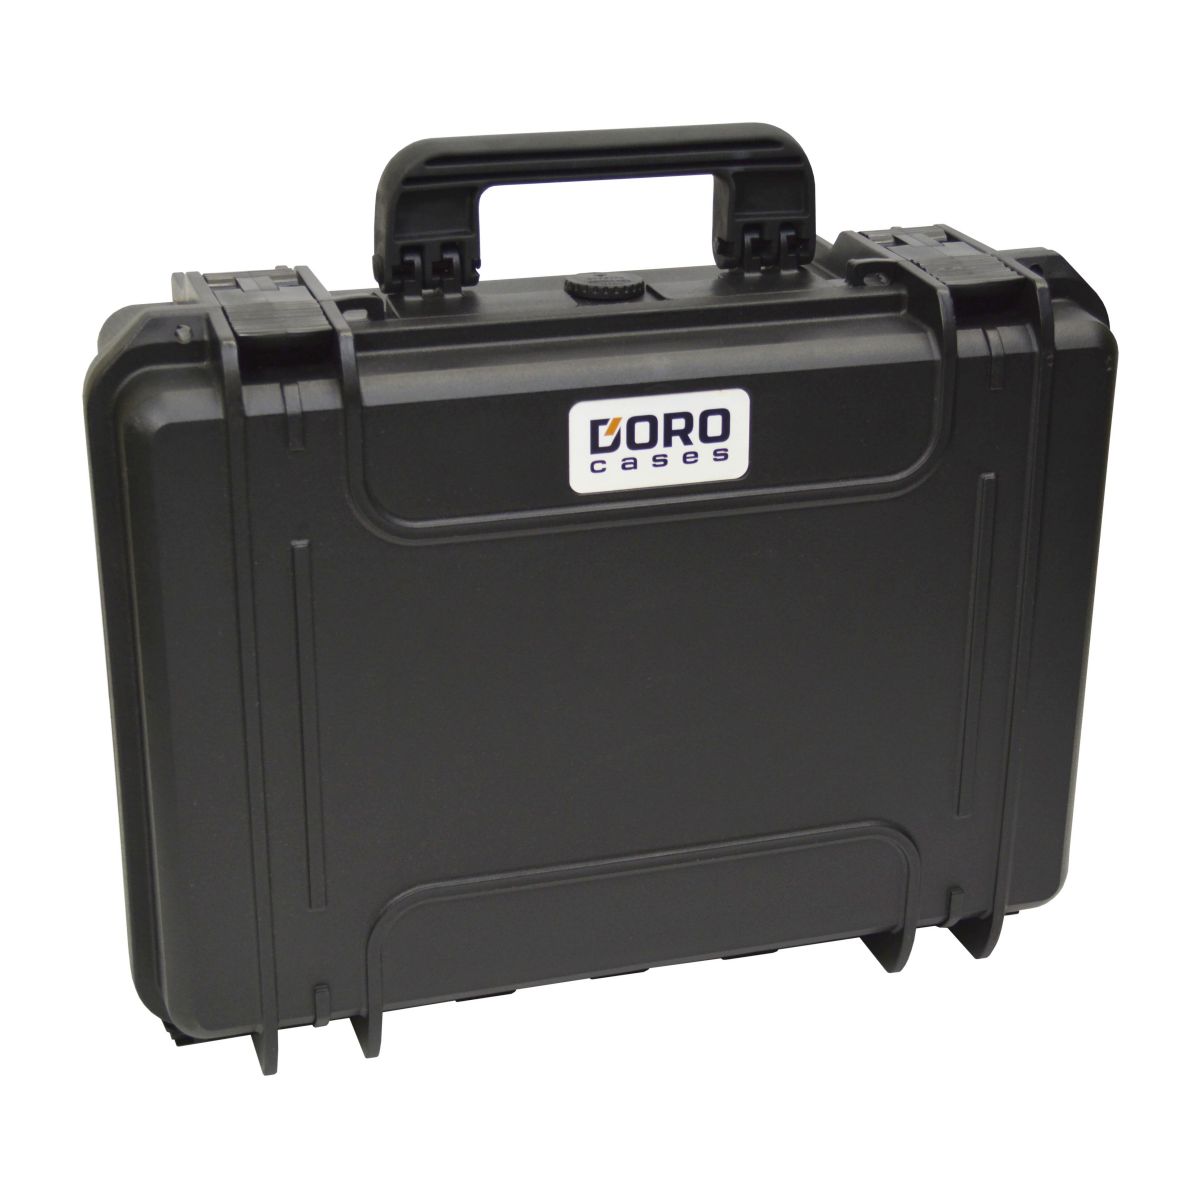 12 x 3.5" SATA / PATA / IDE Hard Drive Storage Case - DORO D1611-6